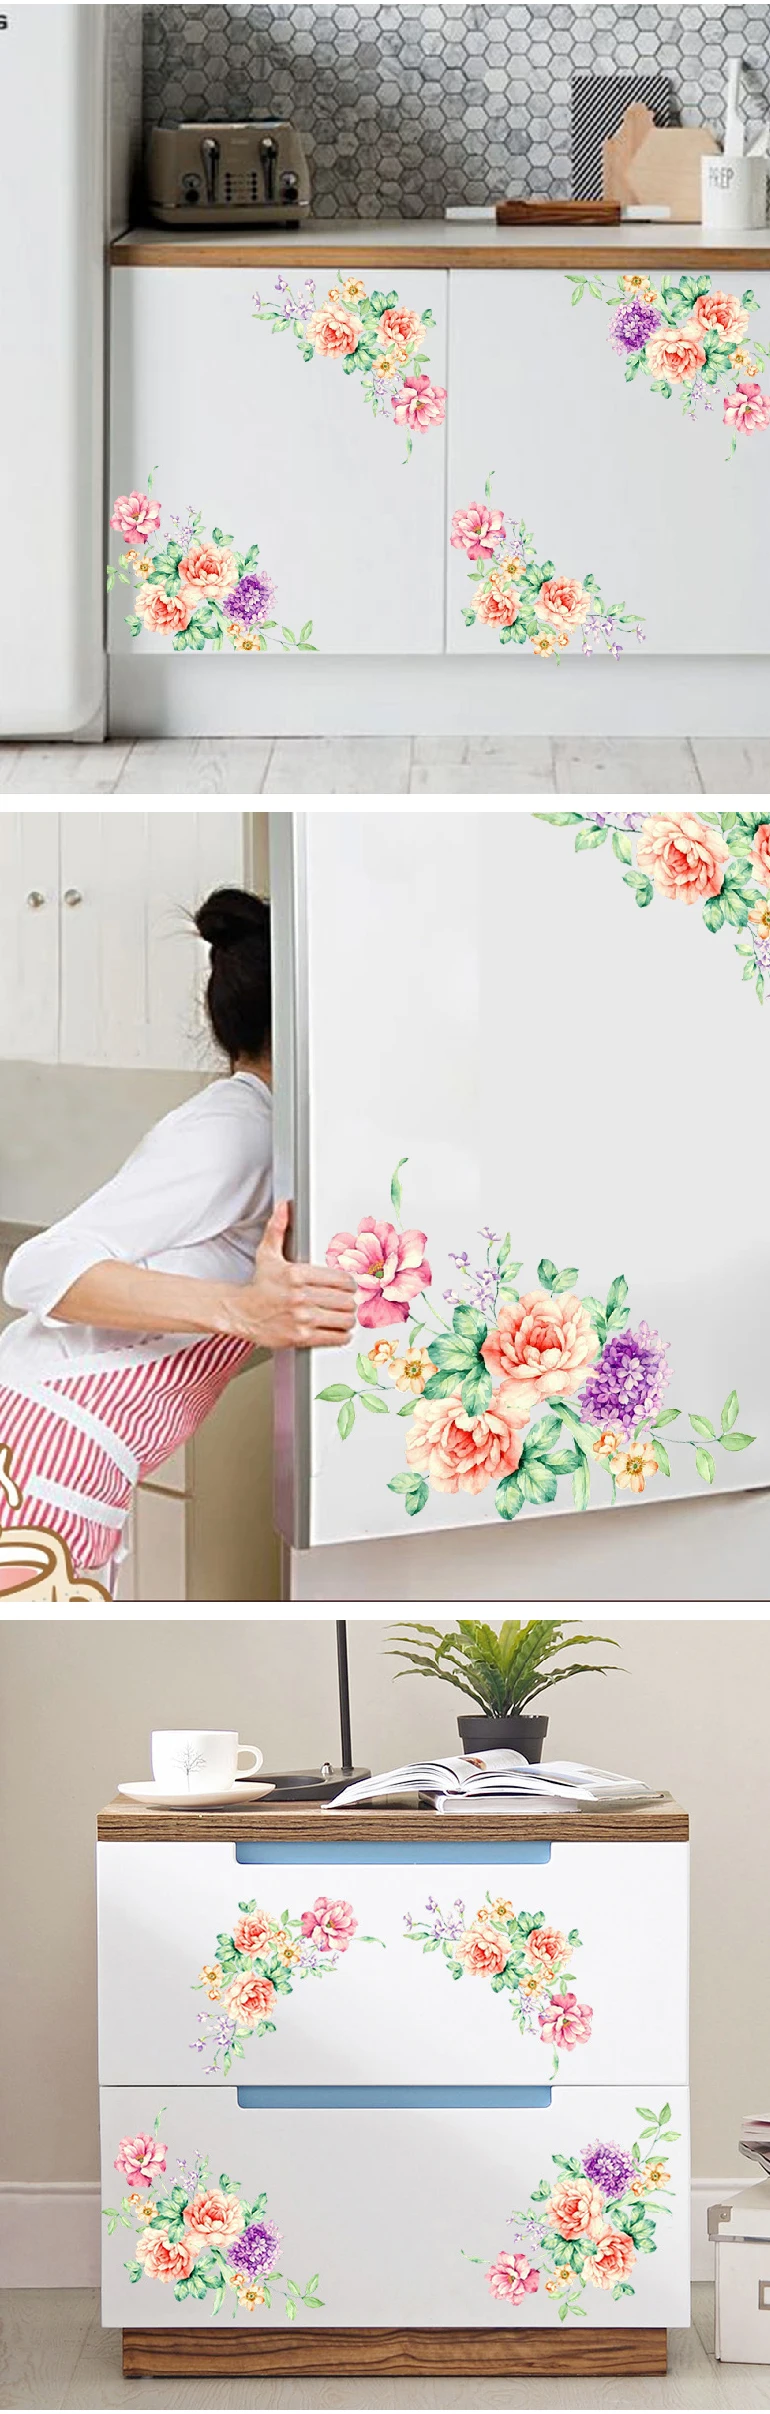 Наклейки на стену с цветами пионов, художественные обои для домашнего декора, съемные виниловые наклейки на стены для детей, декор для туалета, холодильника